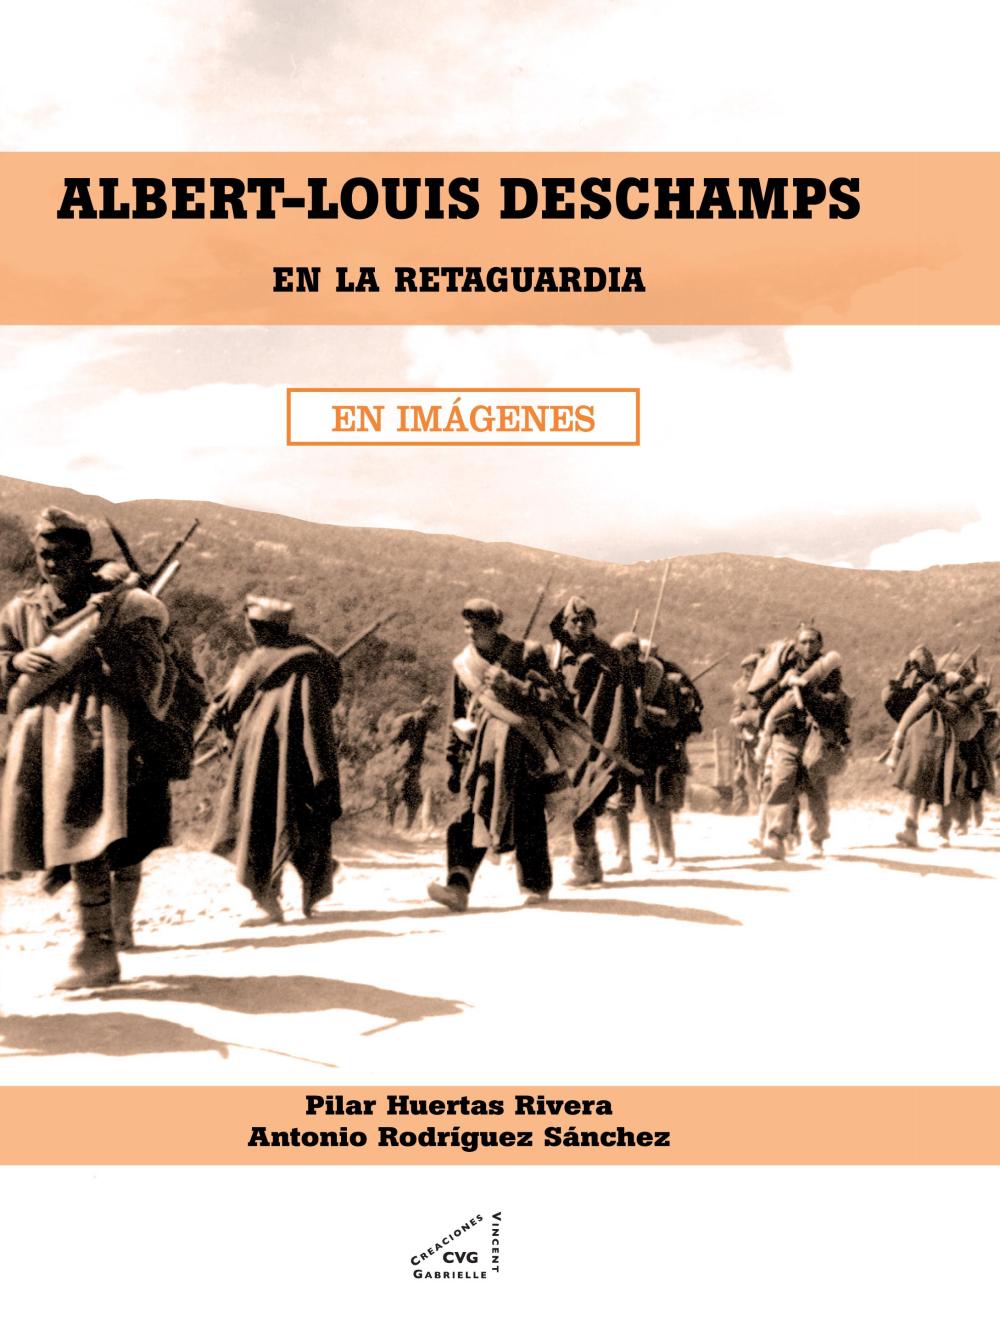 Albert-Louis Deschamps